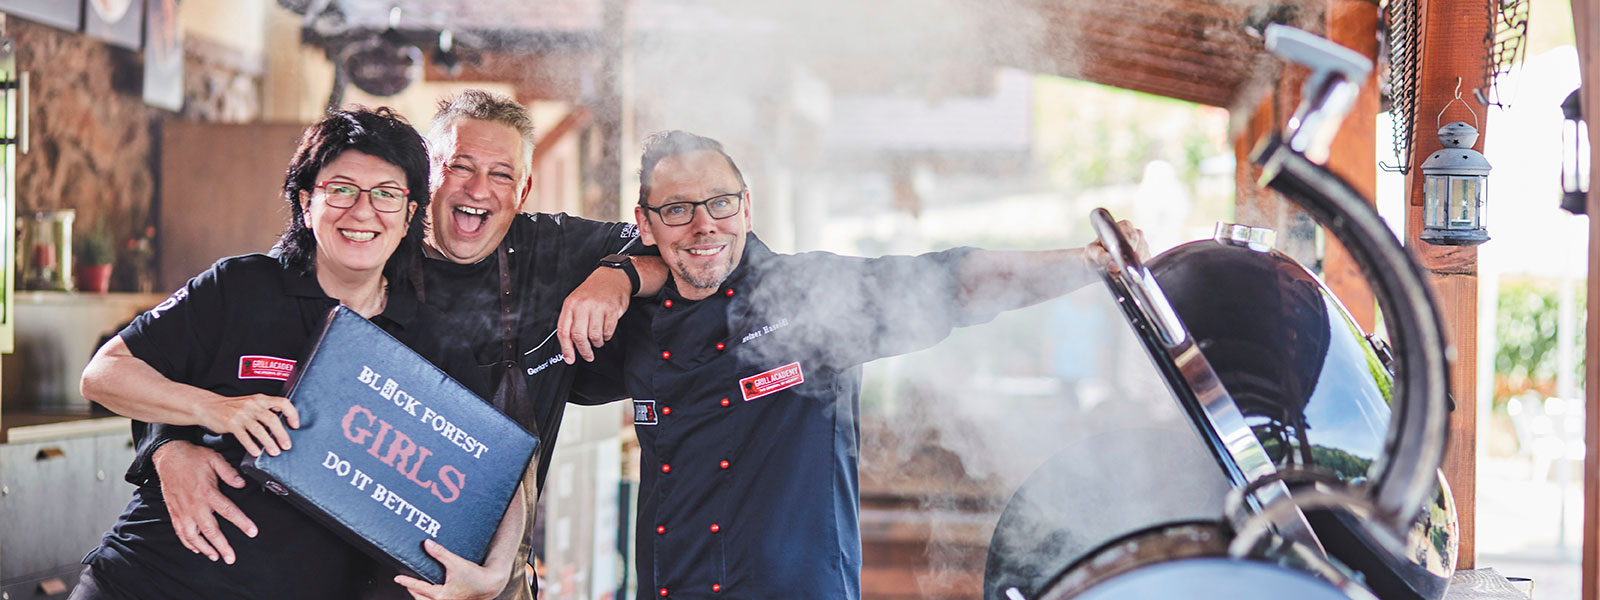 Das Grillteam von Forum Culinaire mit Maria Bruder, Gehard Volk und Heiner Haseidl präsentiert sich vor einem brennenden Grill